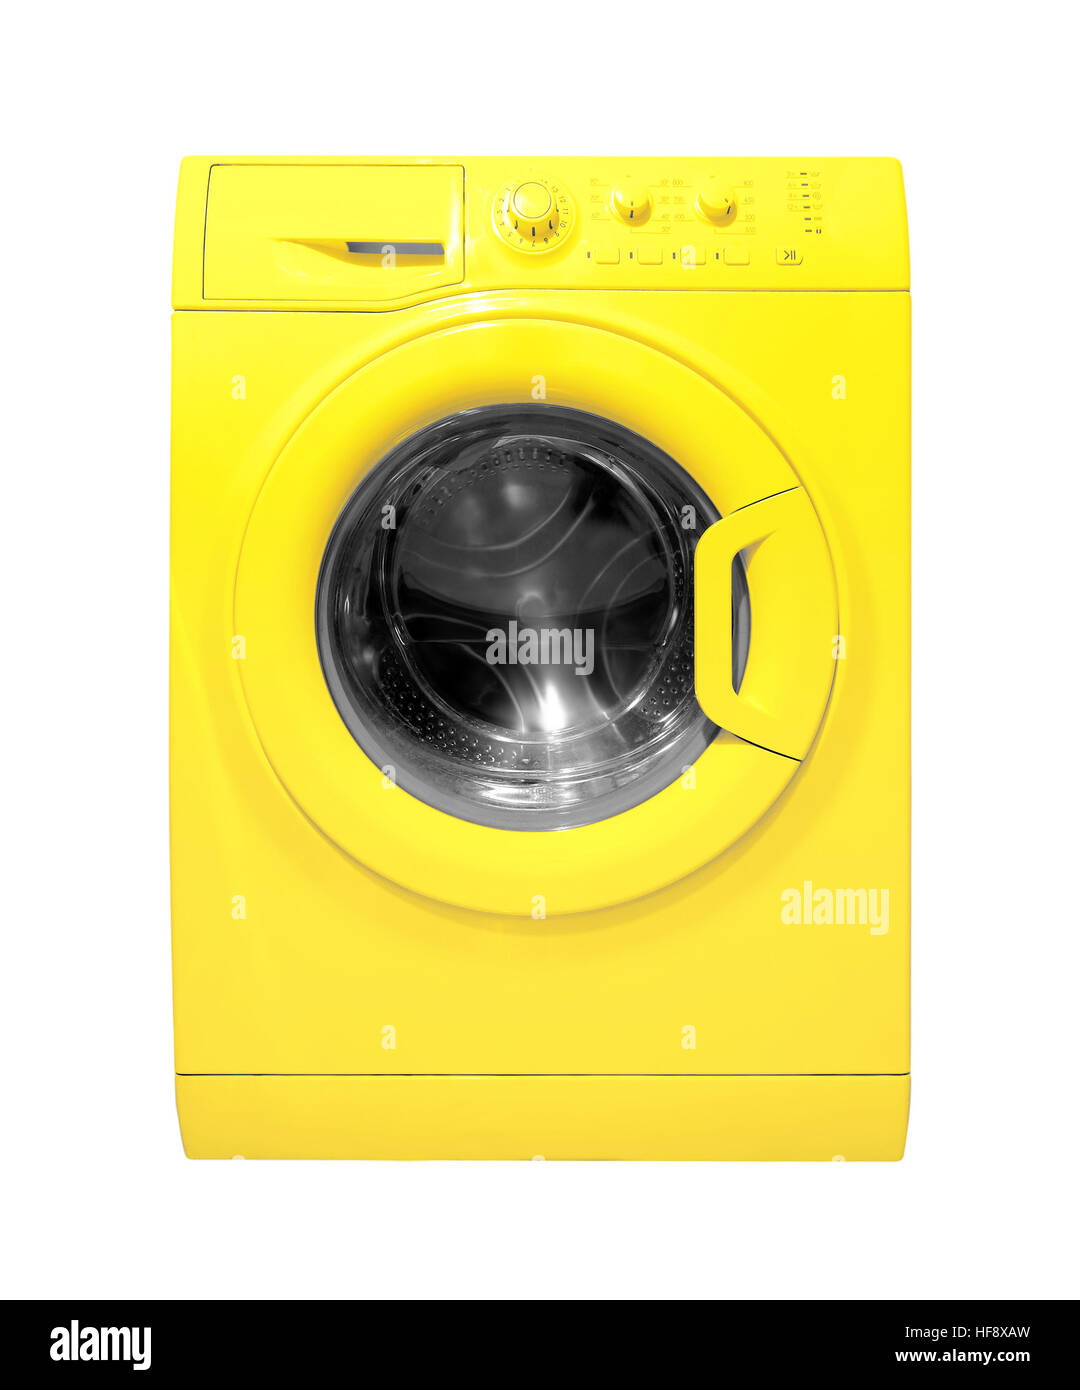 Electrodomésticos: lavadora de color amarillo sobre fondo blanco Fotografía  de stock - Alamy